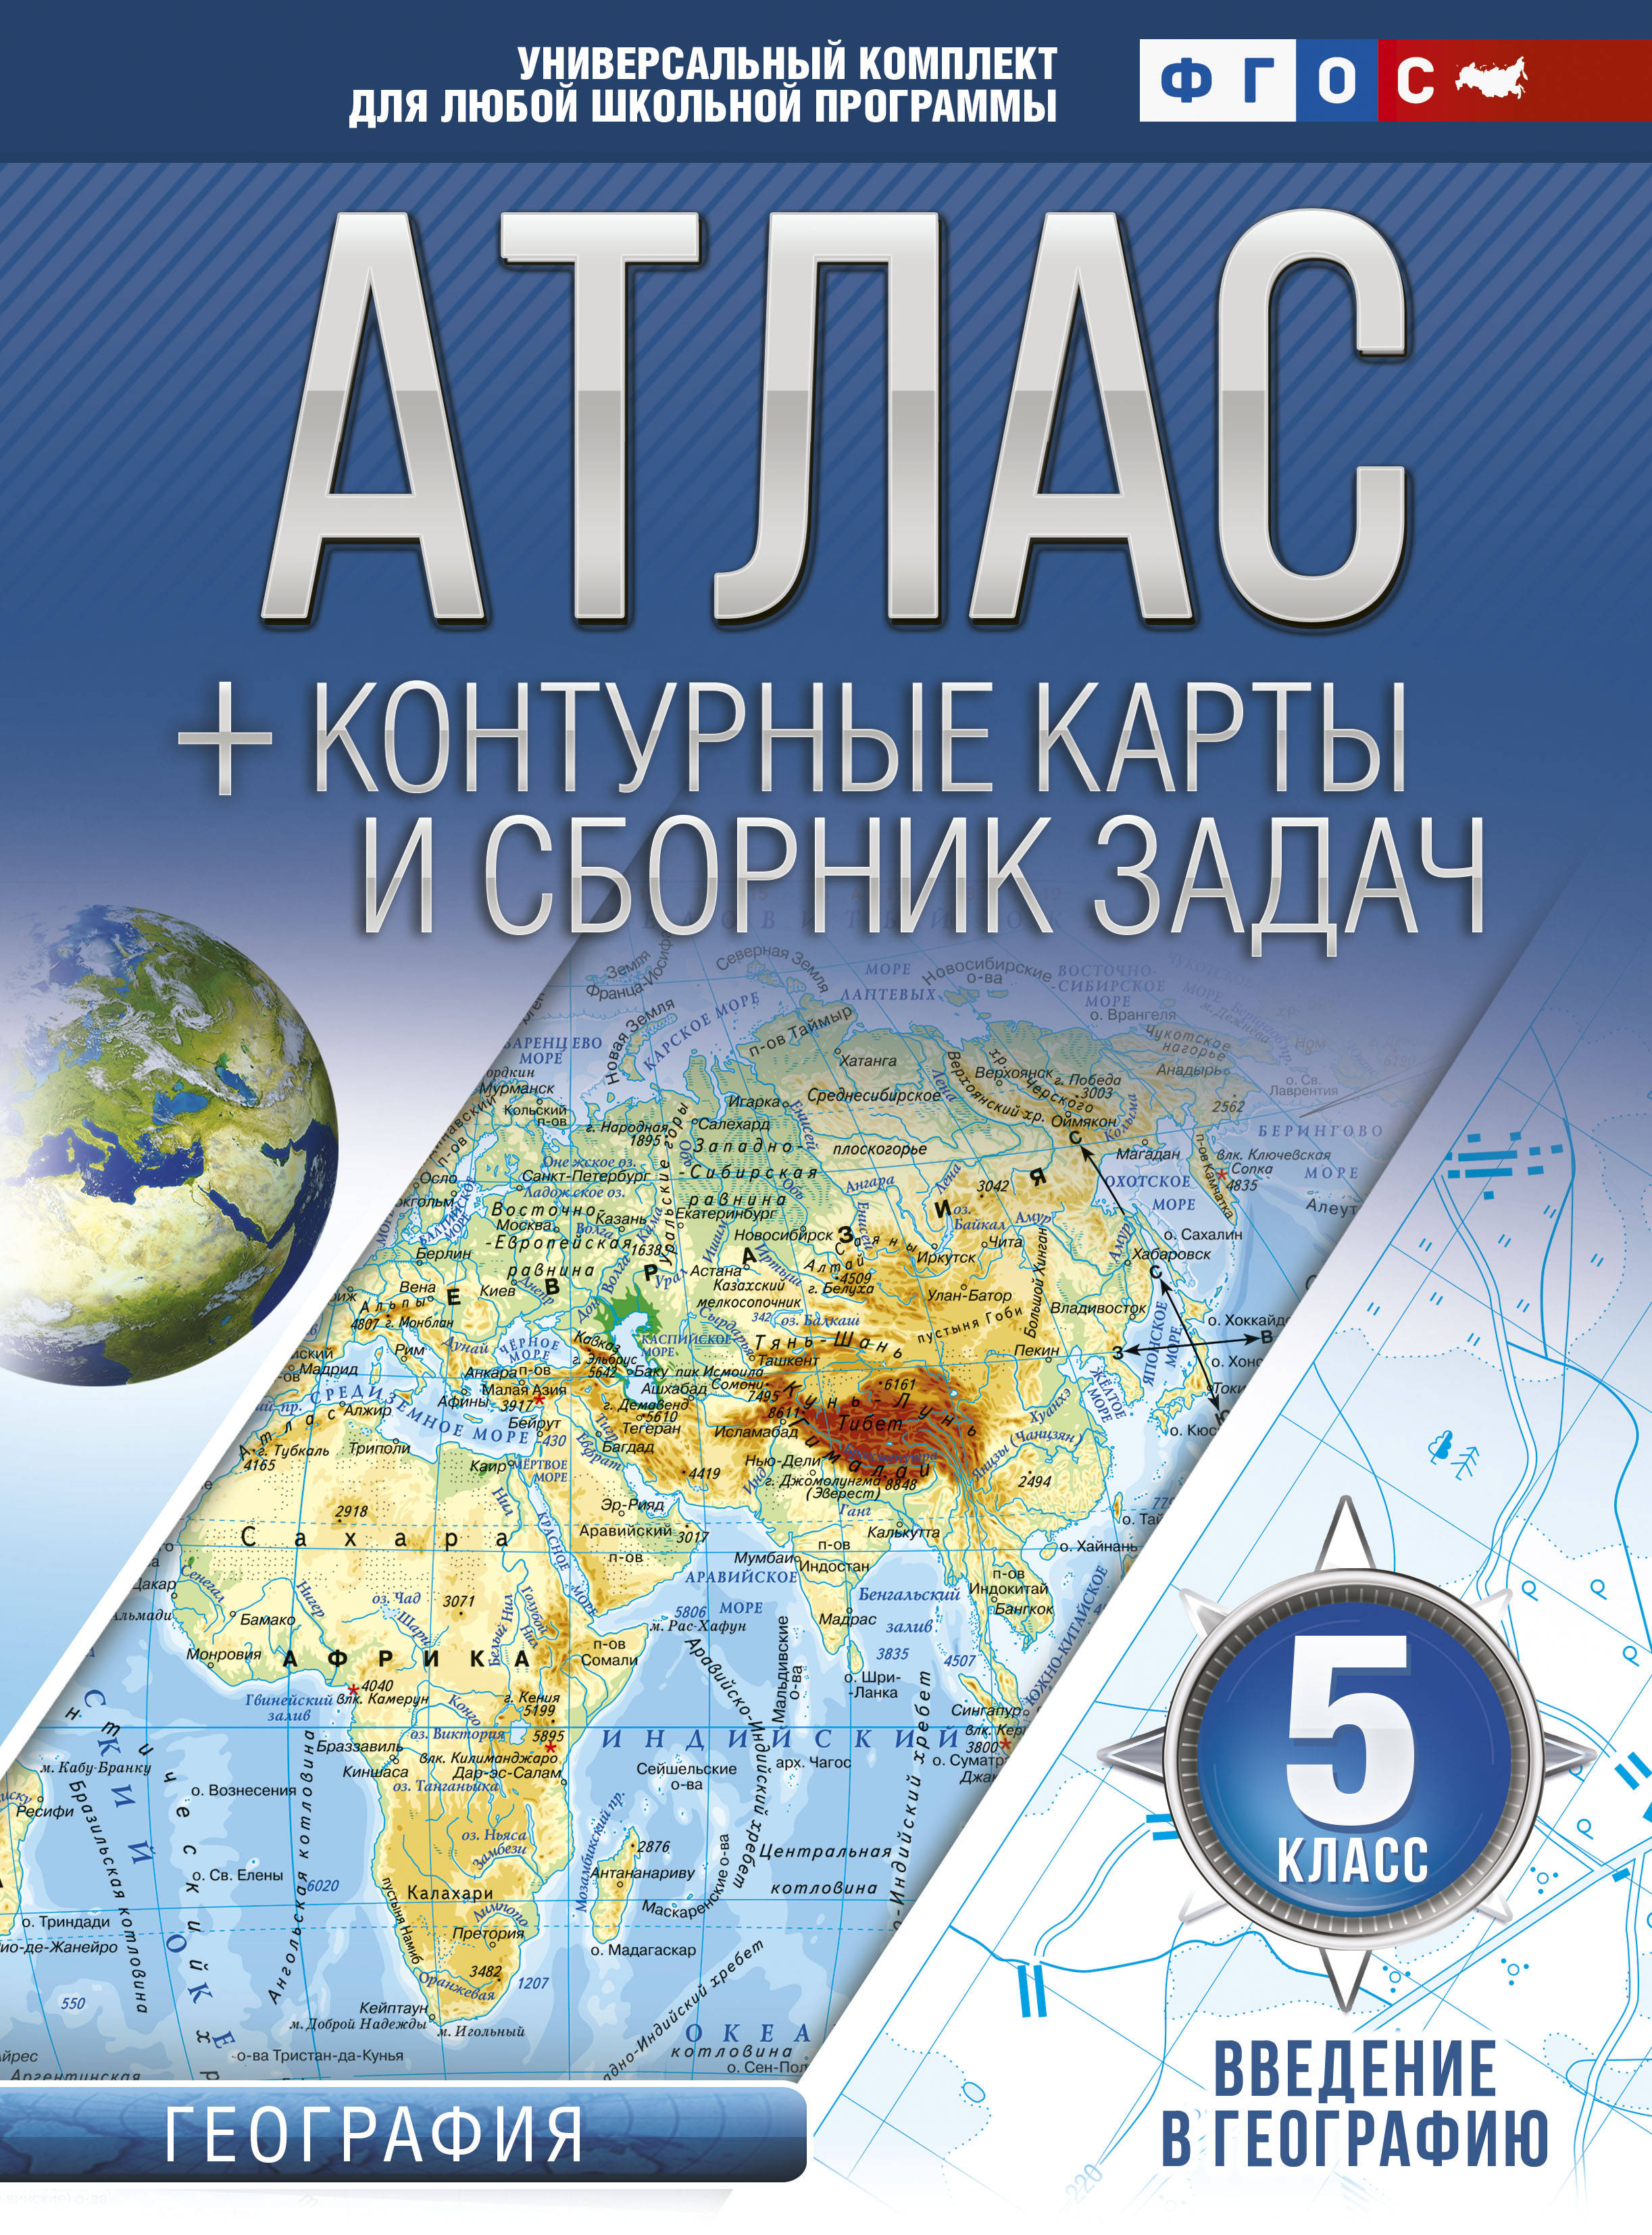 Введение в географию. 5 класс. Атлас + контурные карты (с Крымом)